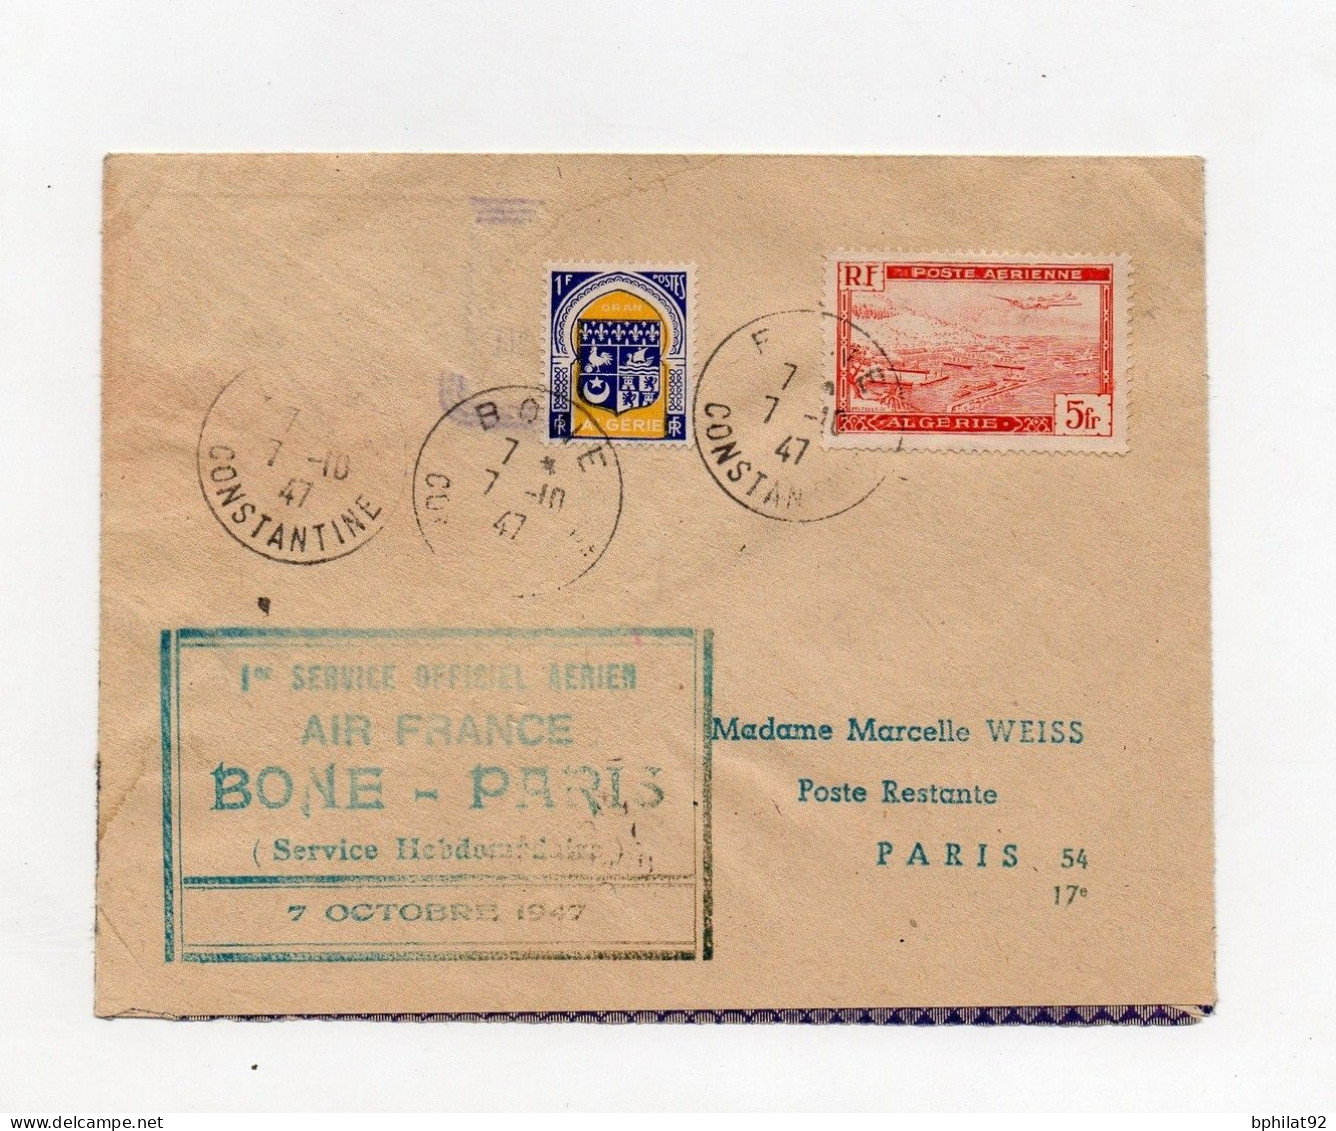 !!! ALGERIE, INAUGURATION DE LA LIGNE DIRECTE BONE-PARIS 9/10/1947, LETTRE RECAPEE DE L'ACCIDENT D'AVION GRIFFE AU DOS - Lettres Accidentées